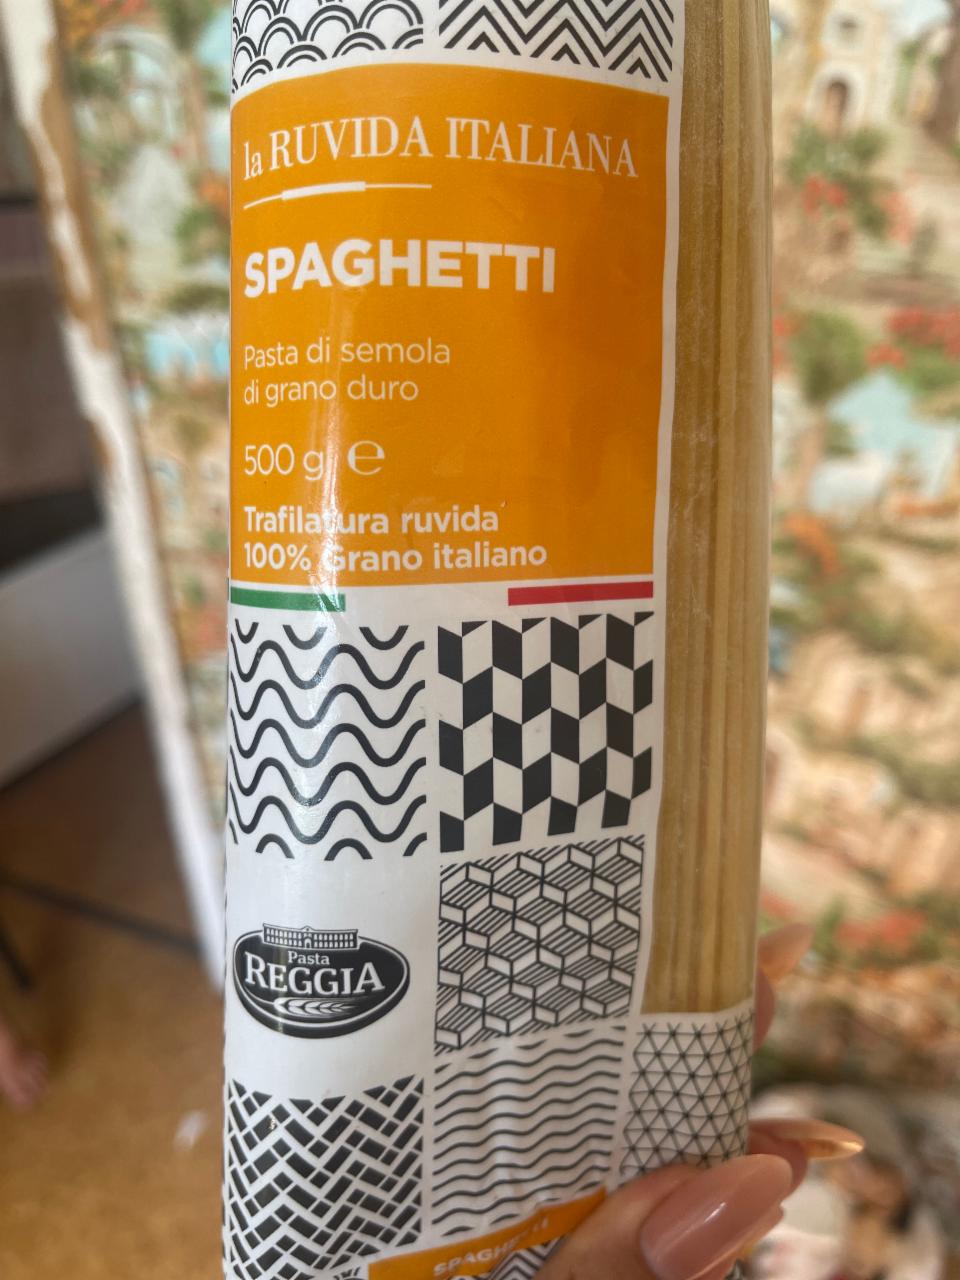 Фото - Spaghetti La ruvida italiana